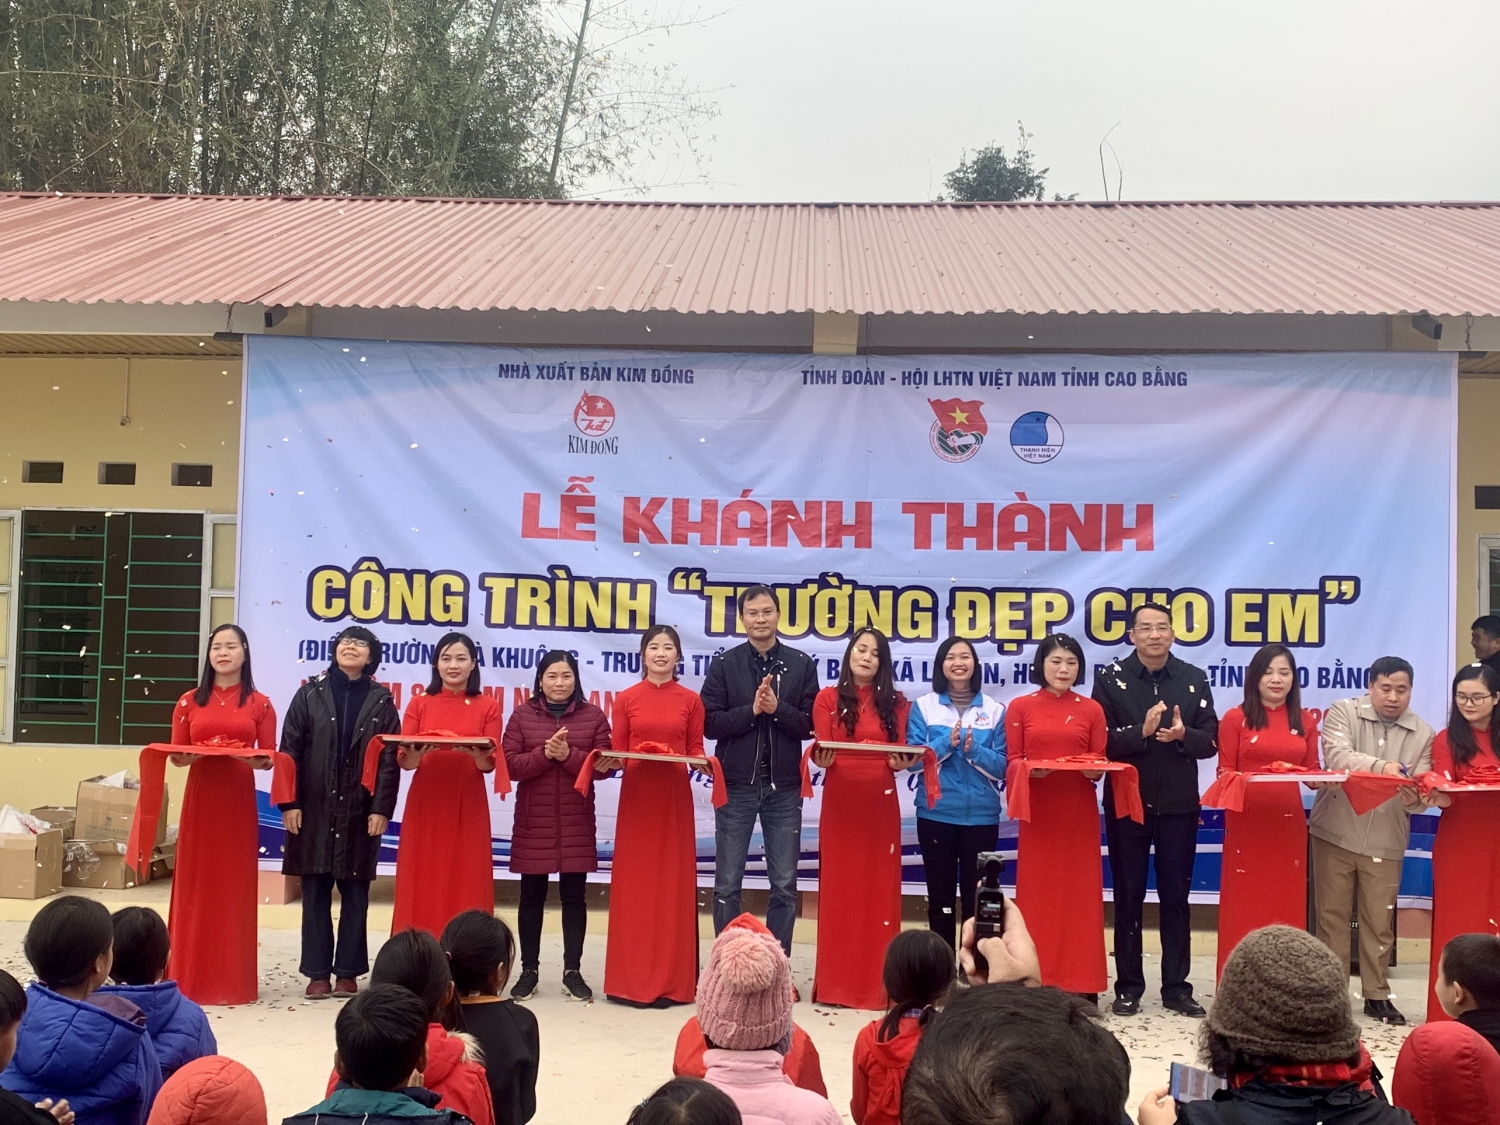 Lễ khánh thành công trình thanh niên “Trường đẹp cho em” tại điểm trường Nà Khuông, trường Tiểu học Lý Bôn.